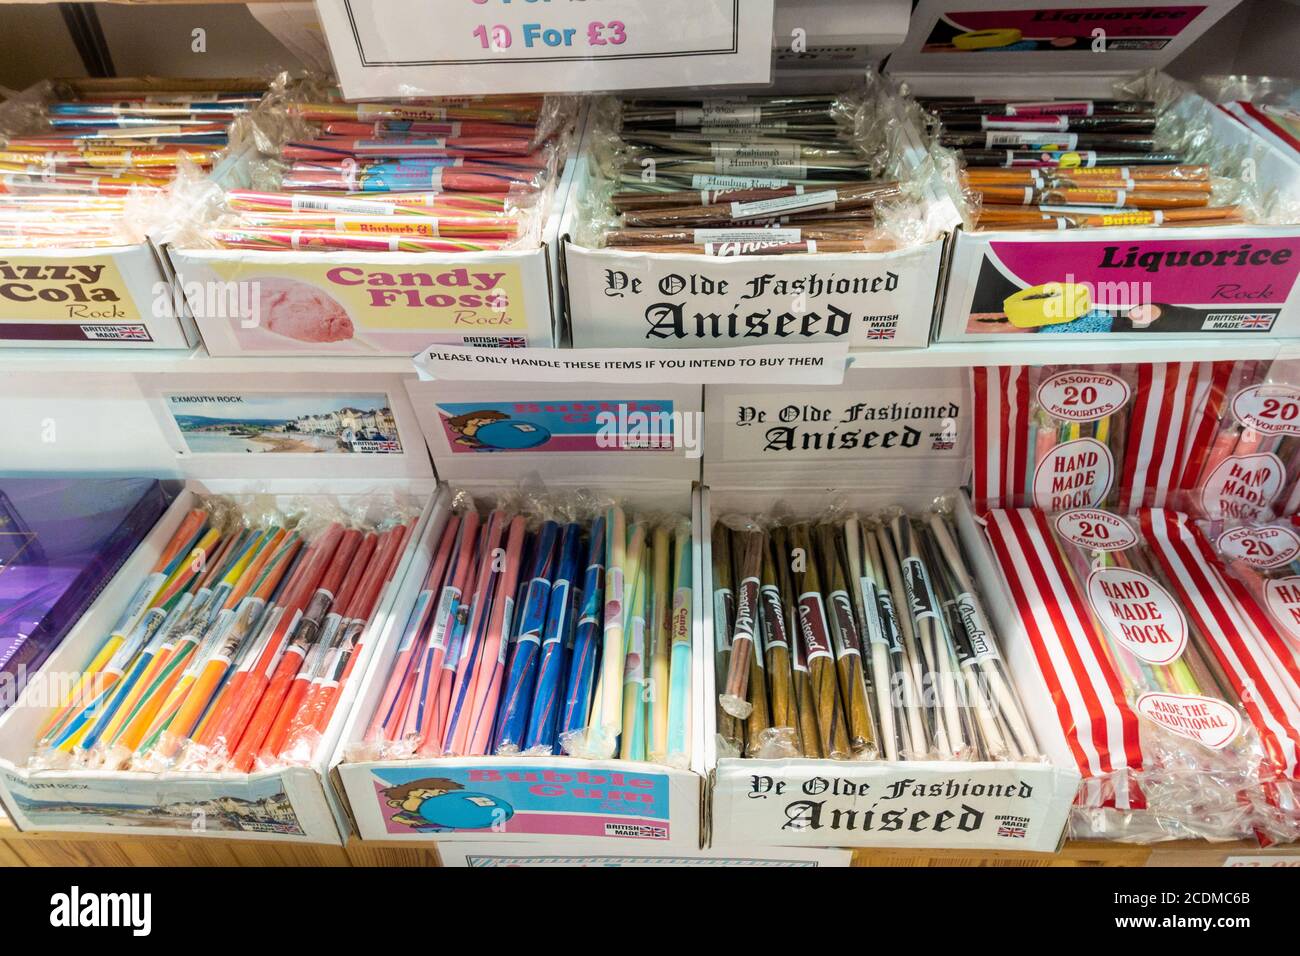 Boîtes contenant des bâtons de roche colorés, un type de bonbons sucrées souvent achetés comme un souvenir comestible pendant les vacances Banque D'Images